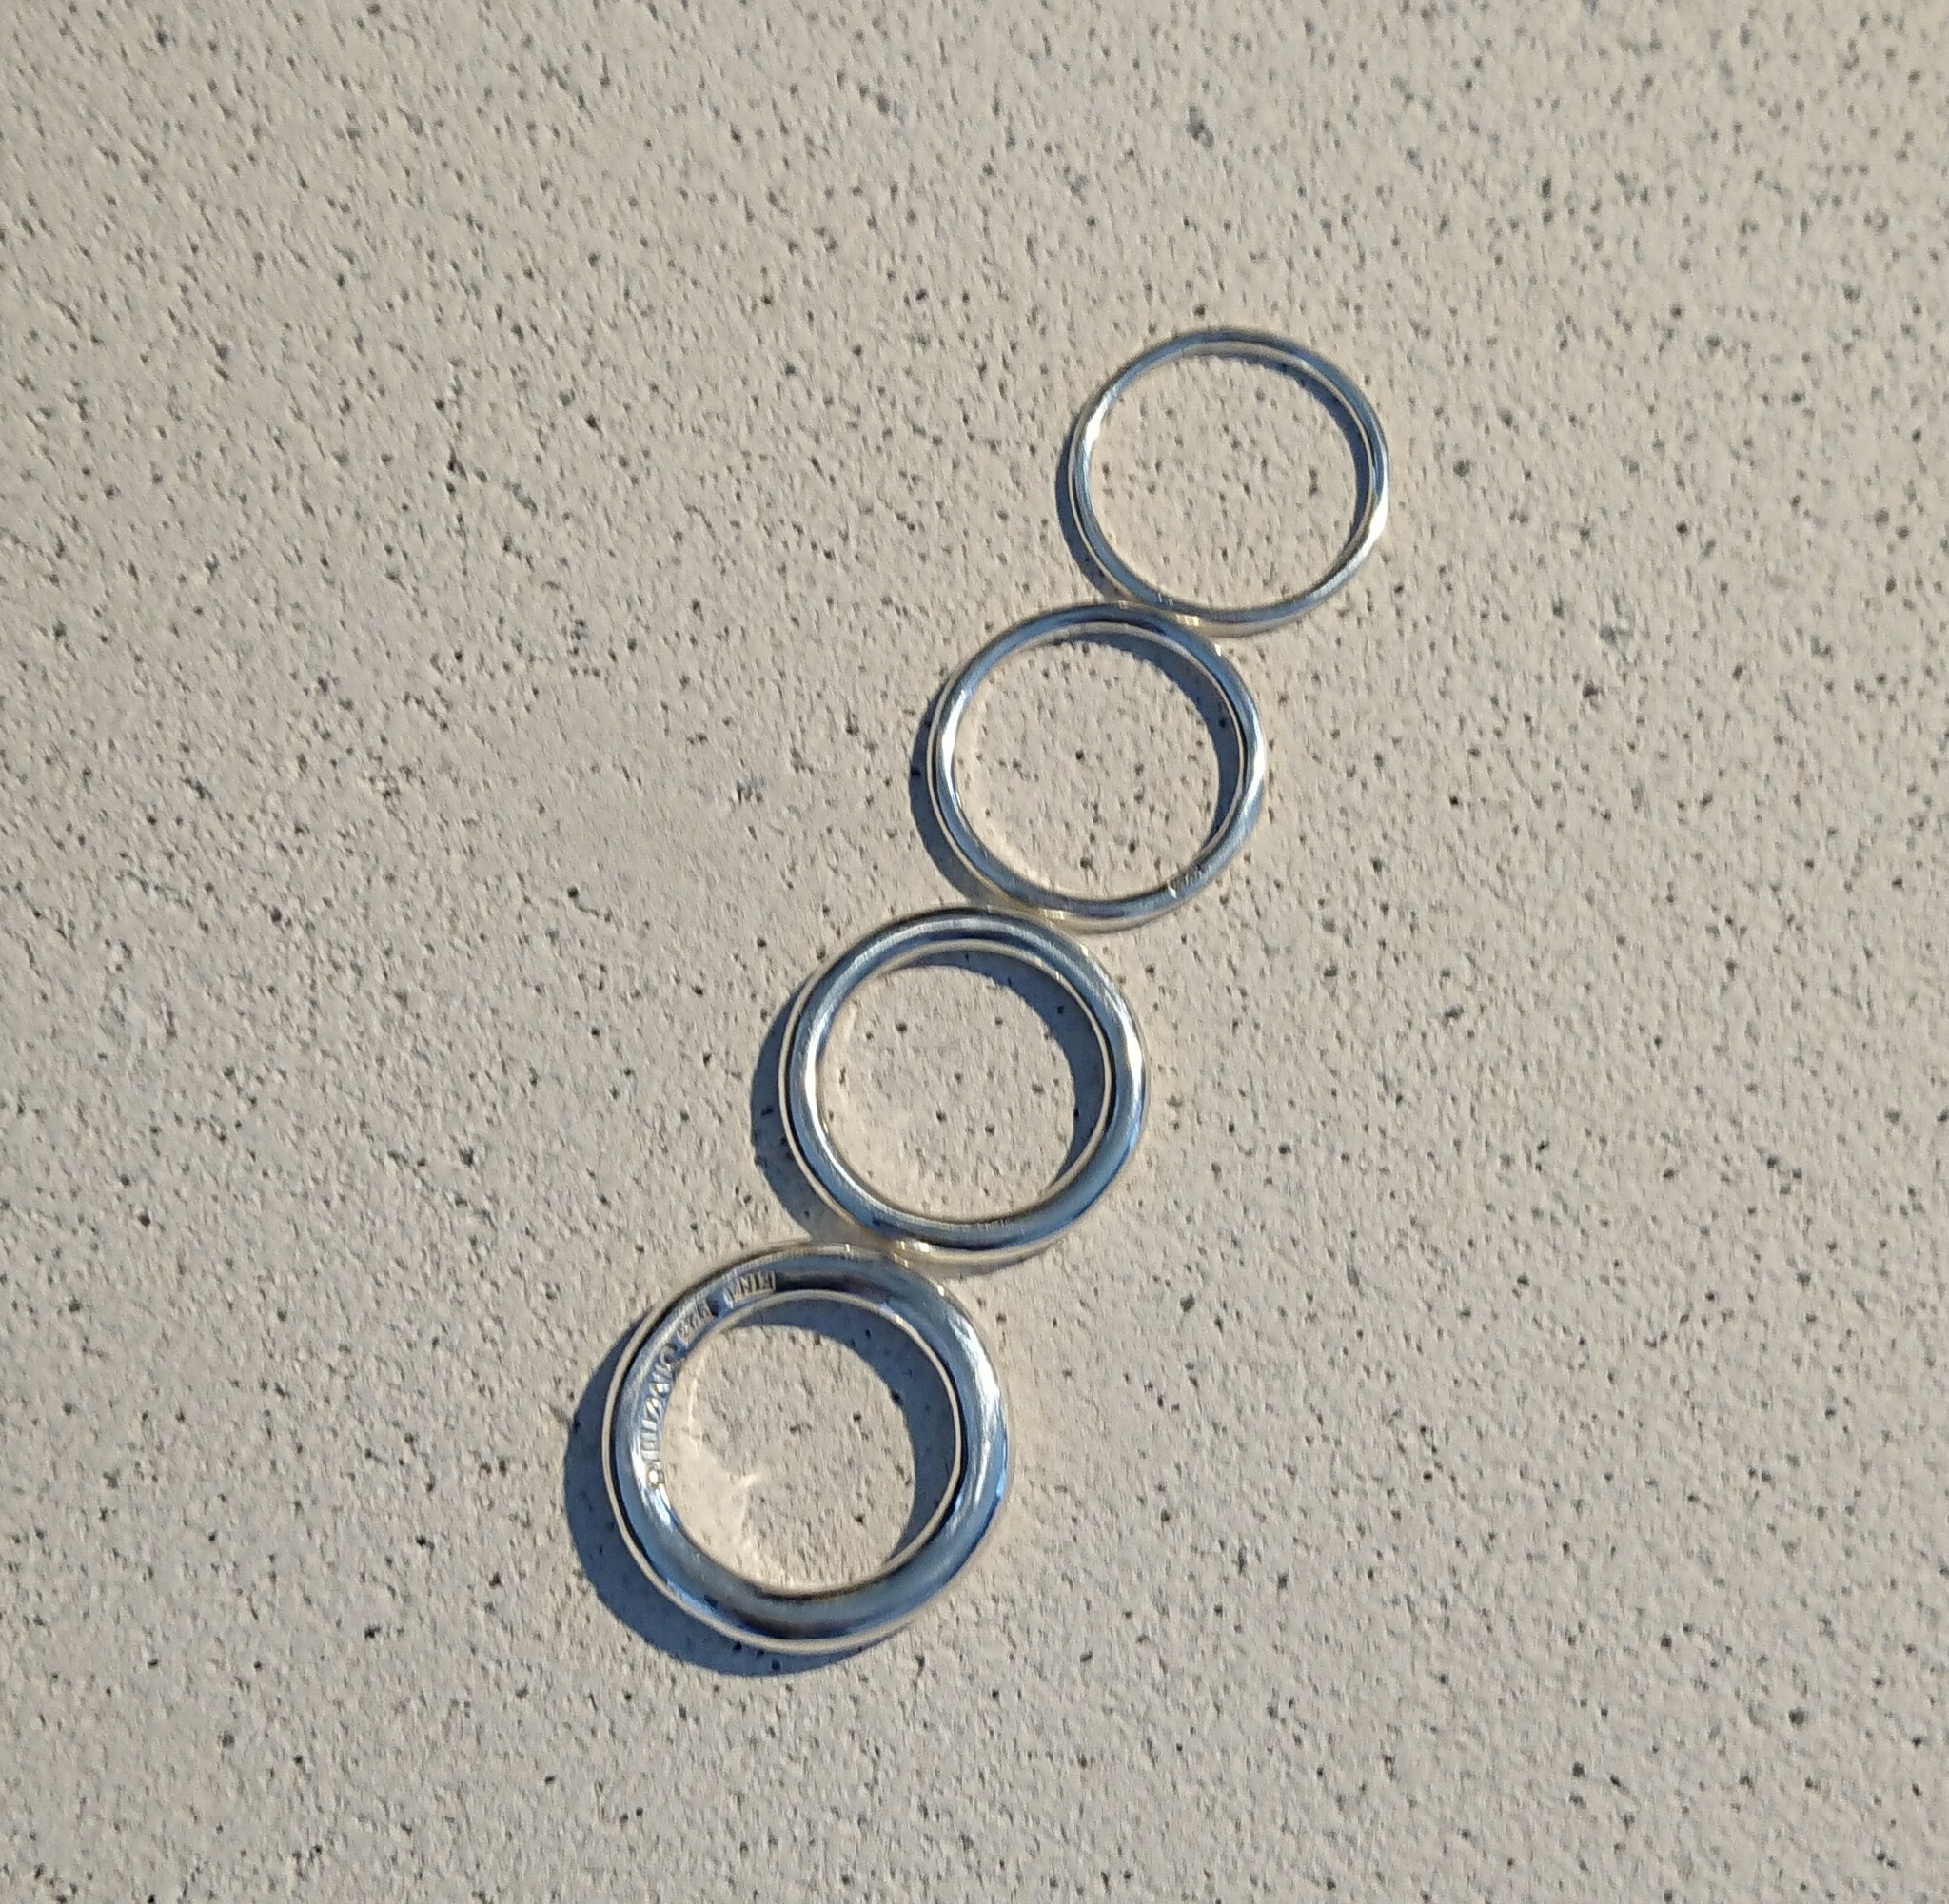 Släta ringar med rund profil, 1,5, 2, 3 och 4 mm i diameter. Bilden illustrerar skillnaden mellan olika tjocklekar.